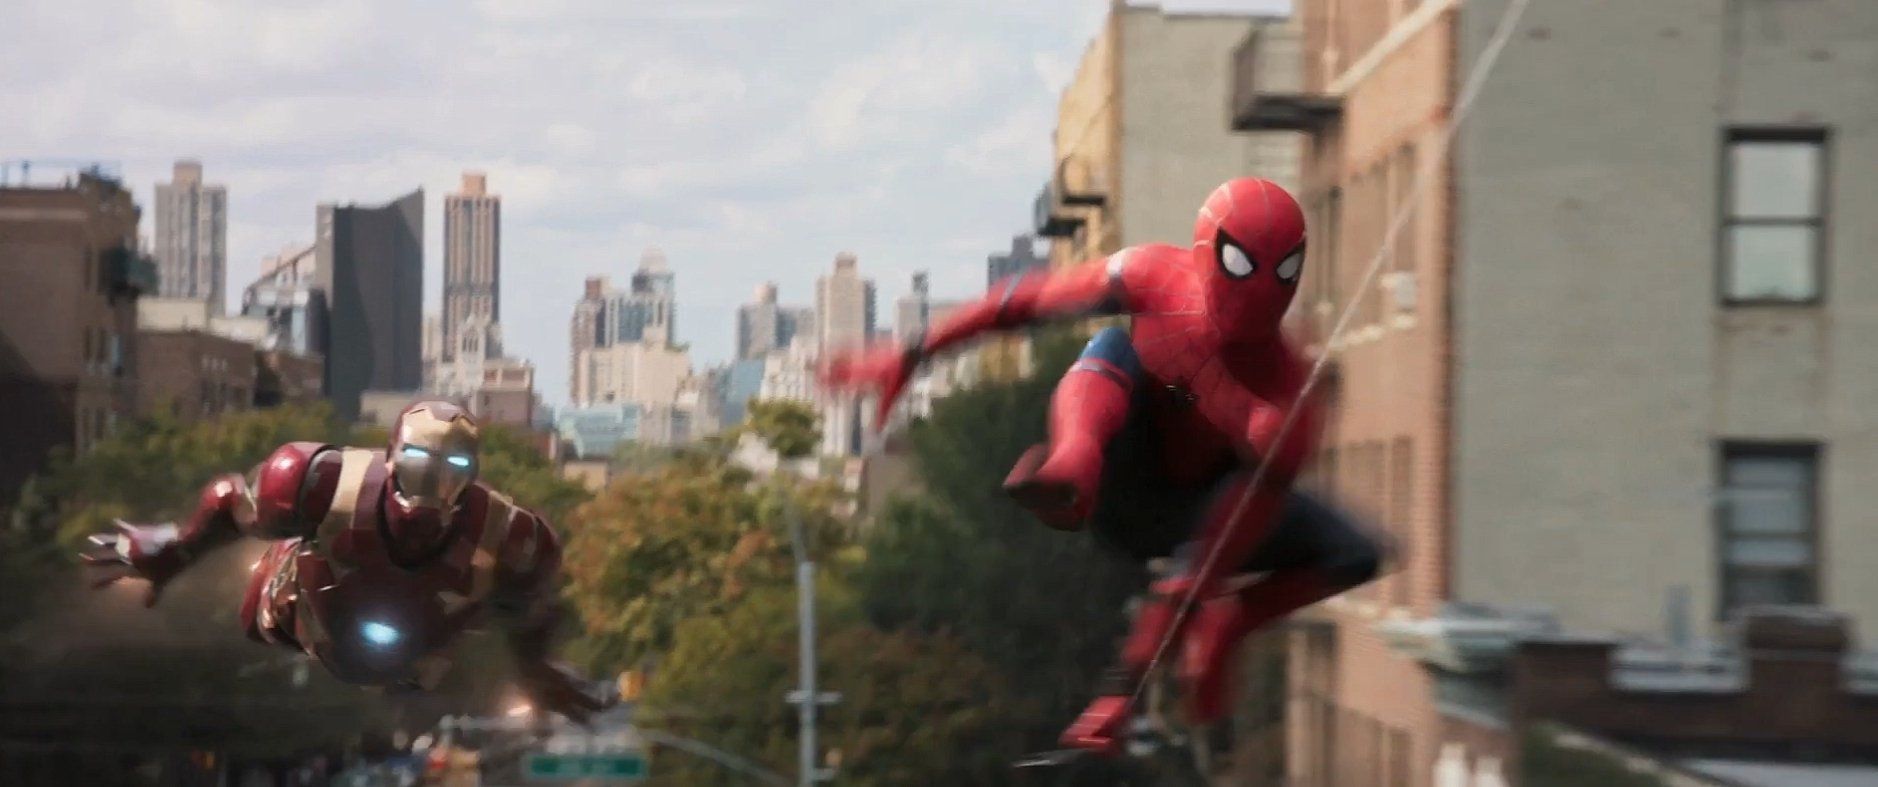 Spider-man homecoming : 2 bandes annonces avec iron man, le vautour et le shocker